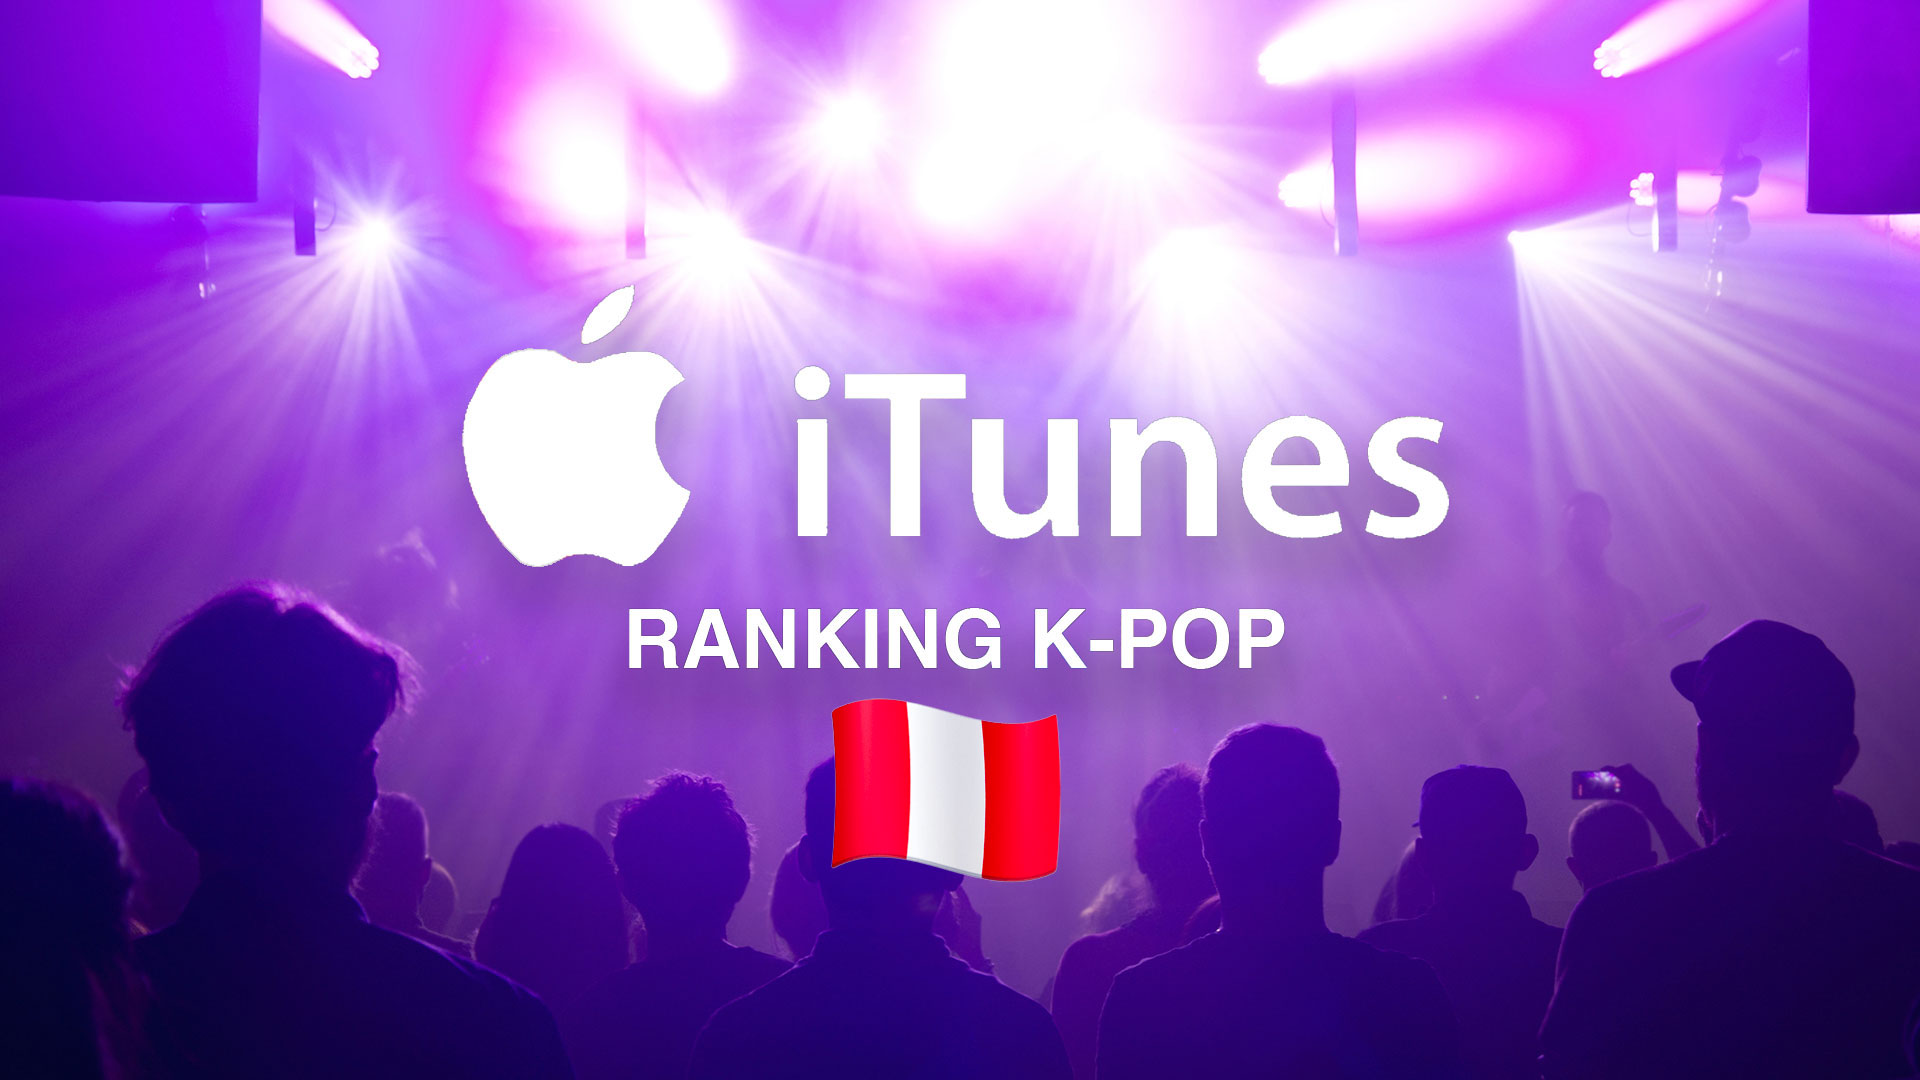 K-pop en Perú: 10 canciones este fin de semana en el ranking de iTunes